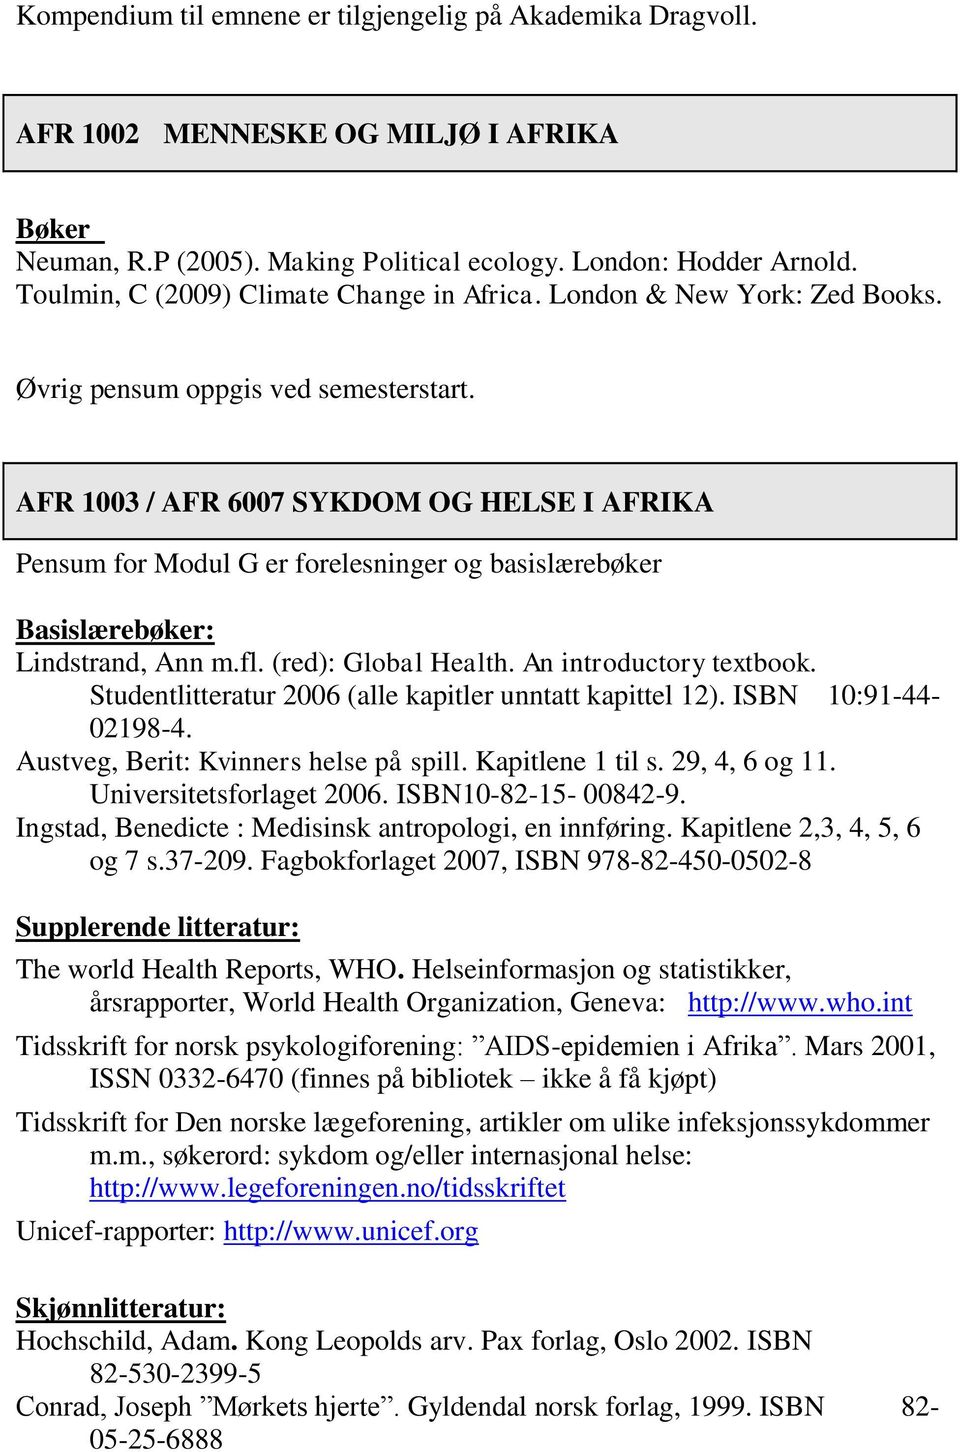 AFR 1003 / AFR 6007 SYKDOM OG HELSE I AFRIKA Pensum for Modul G er forelesninger og basislærebøker Basislærebøker: Lindstrand, Ann m.fl. (red): Global Health. An introductory textbook.